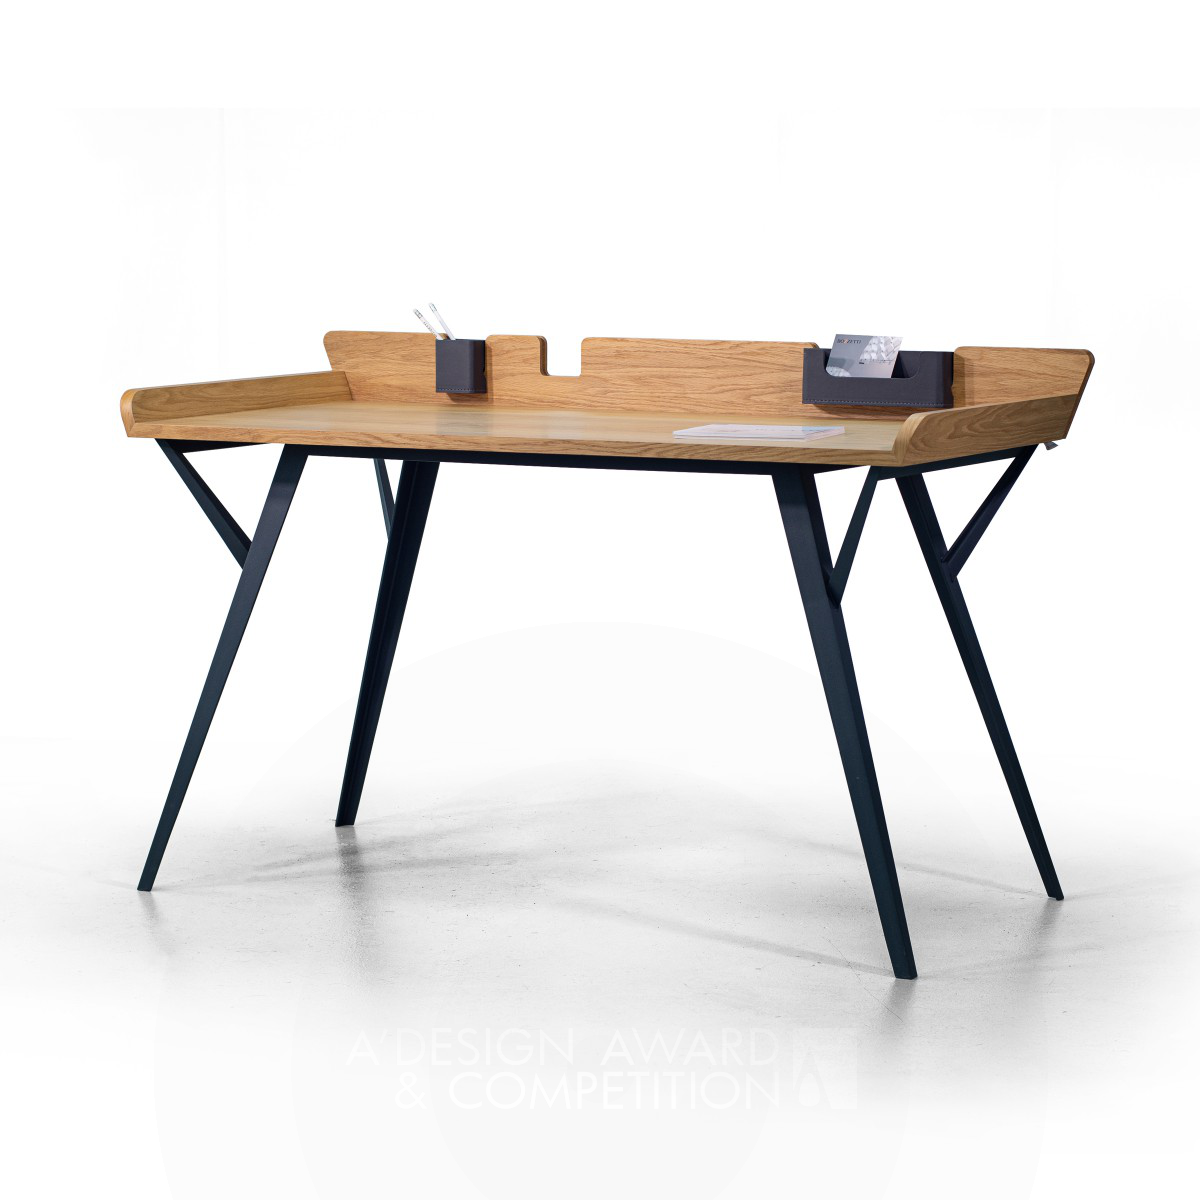 Diag: Ein moderner Schreibtisch mit stilvollem Design